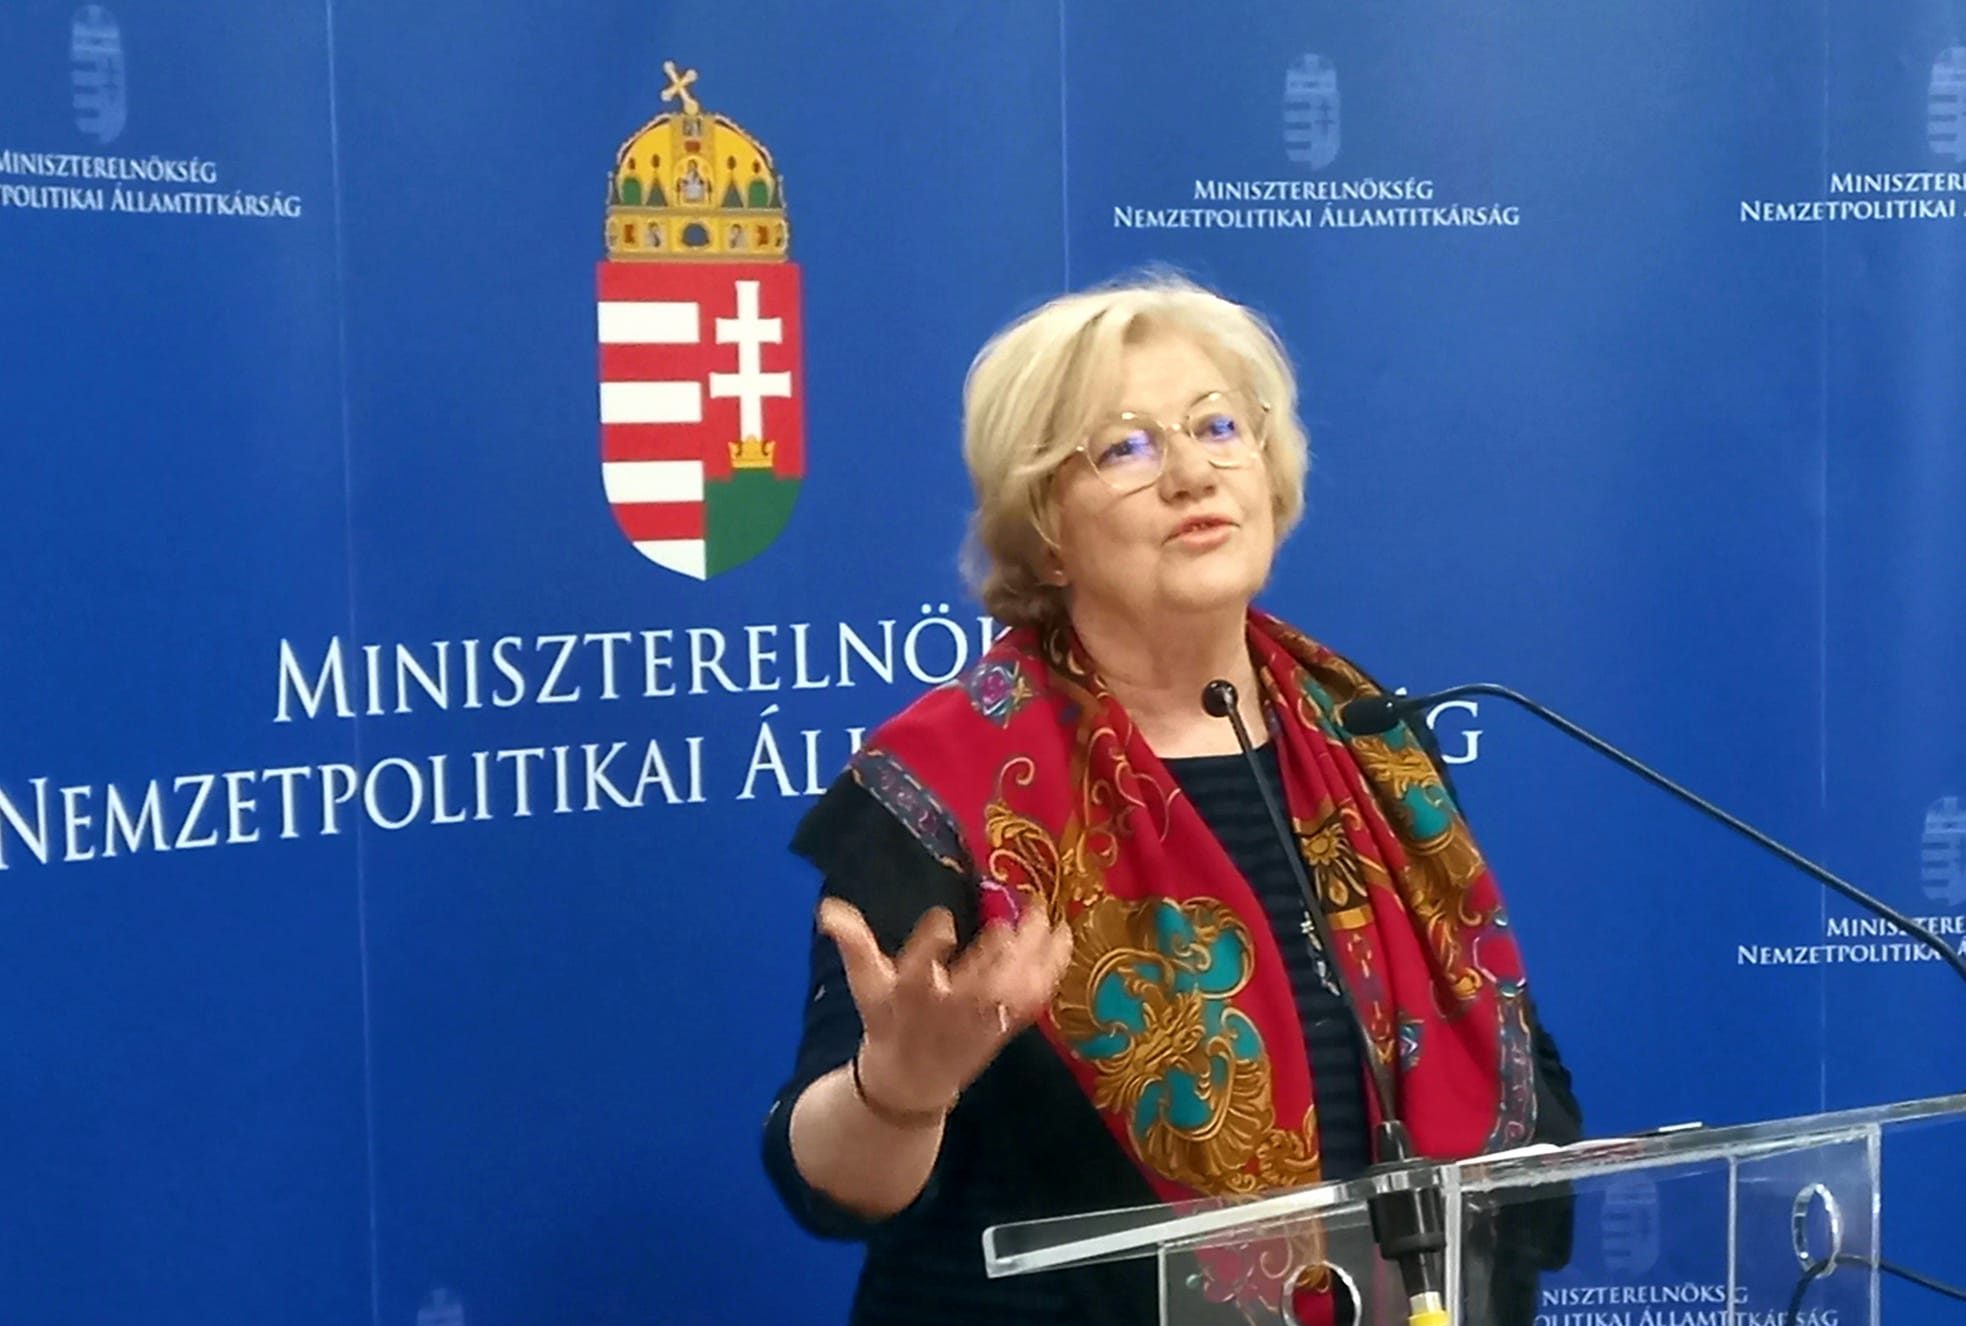 Slovenia Has Exemplary Model for Minority Rights